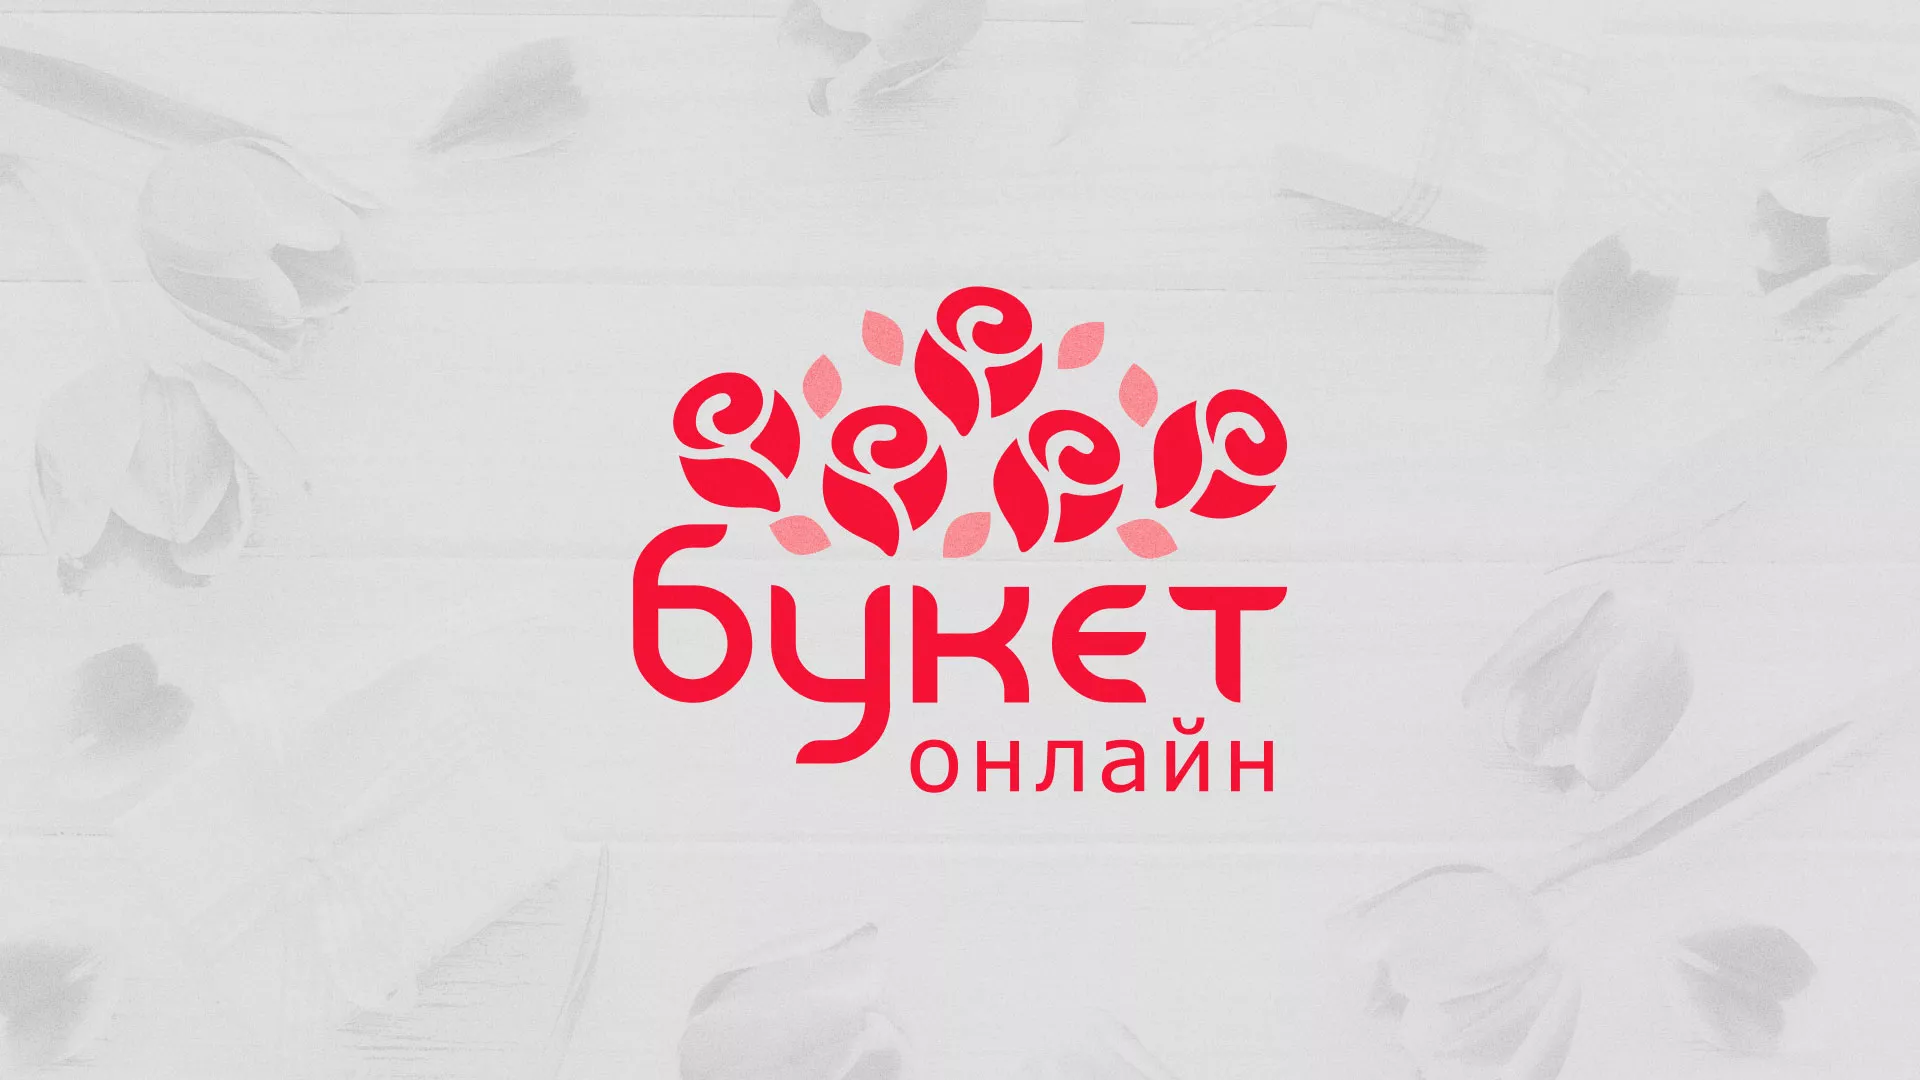 Создание интернет-магазина «Букет-онлайн» по цветам в Слюдянке